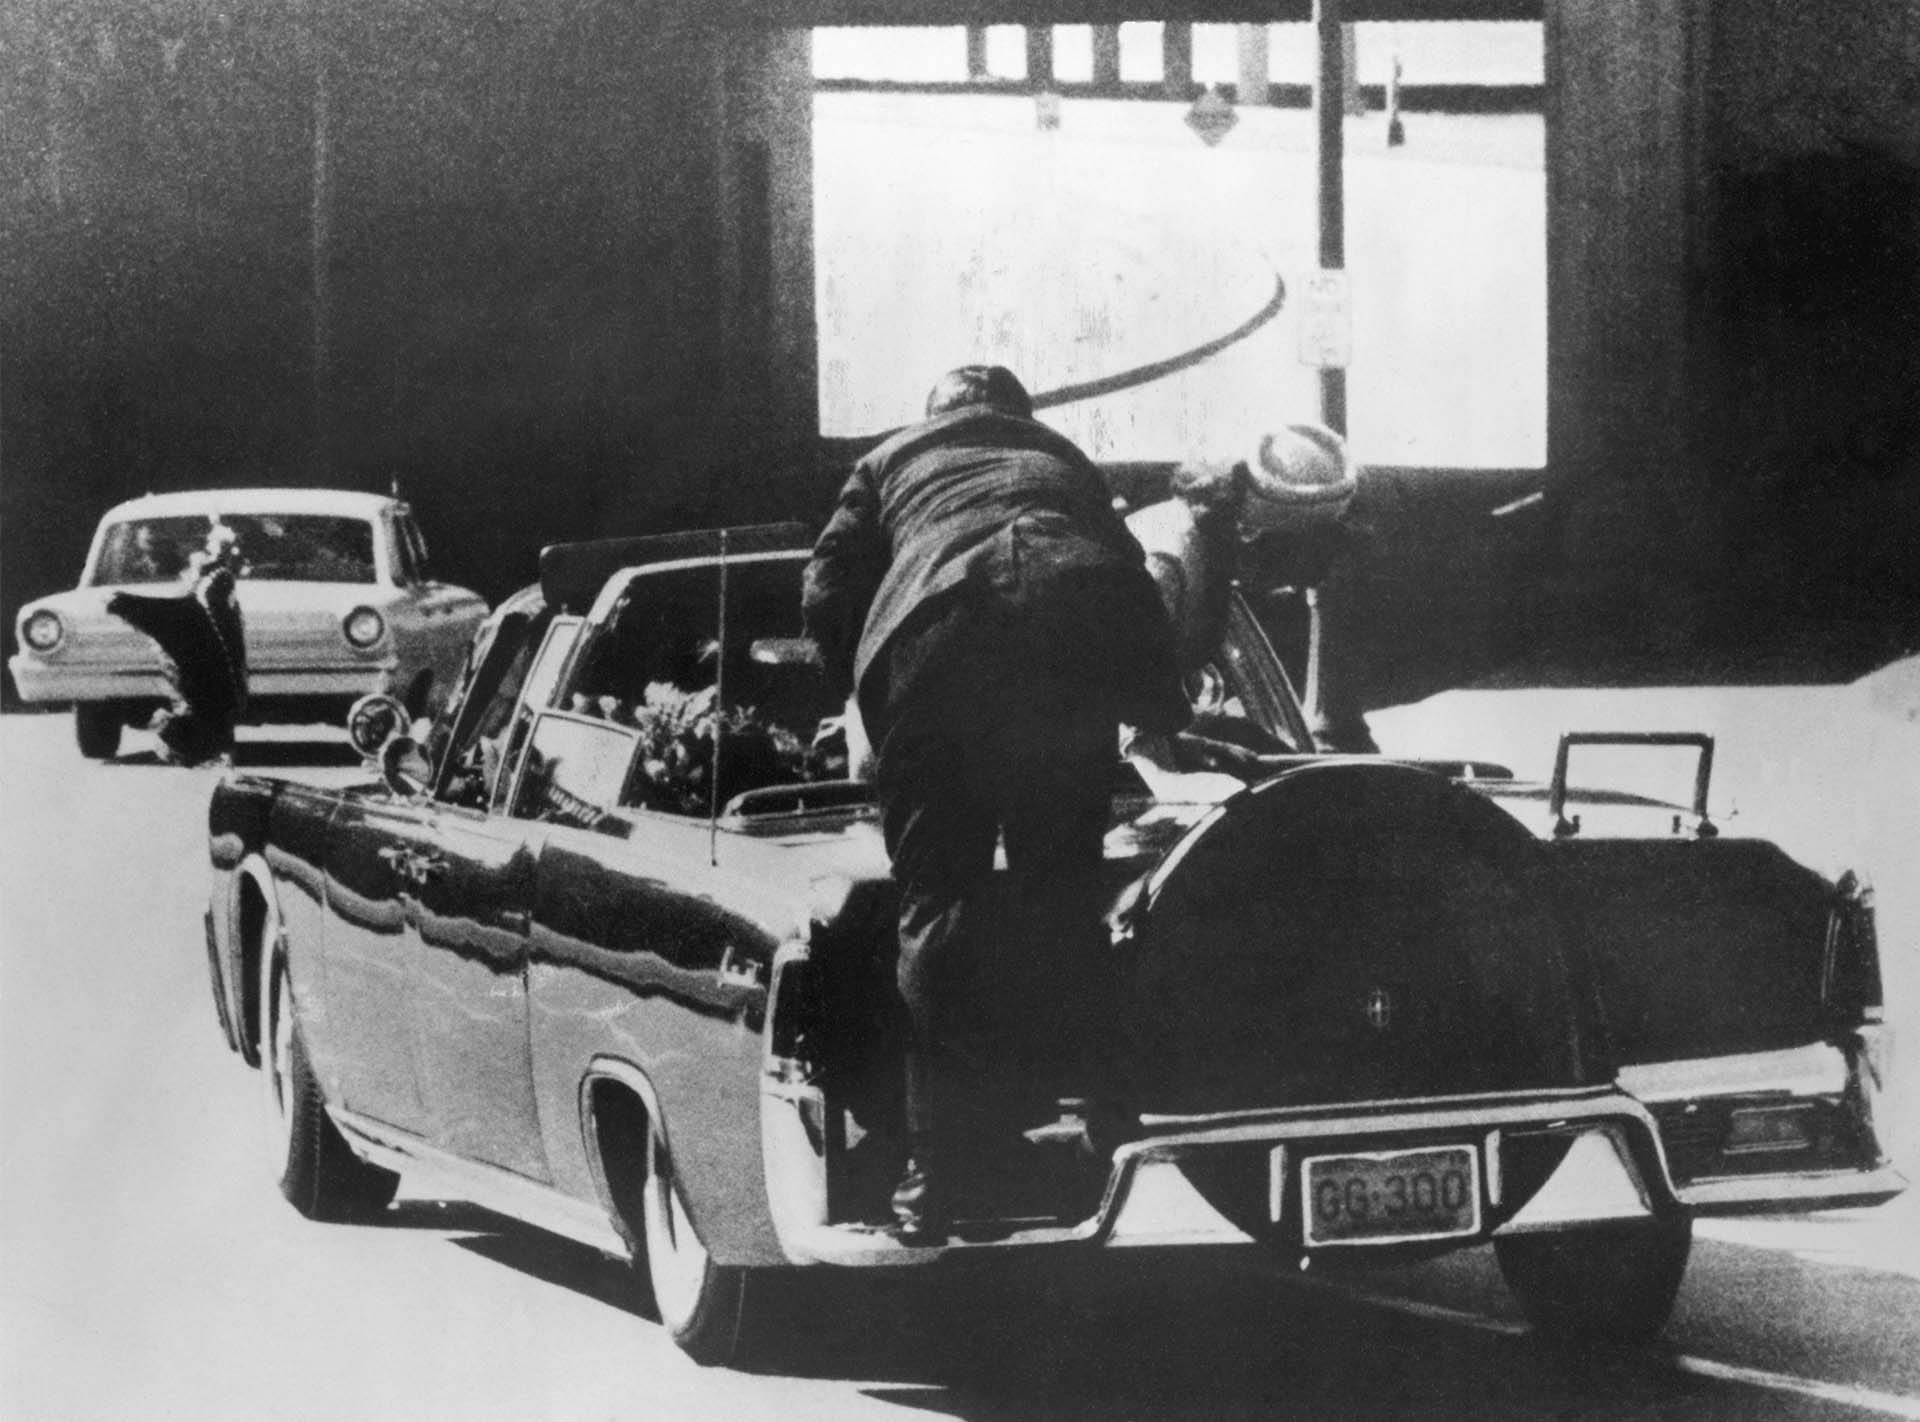 Asesinato de John F. Kennedy. La Sra. Kennedy se inclina sobre el Presidente baleado mientras un hombre del Servicio Secreto sube a la parte trasera del auto en Dallas, Texas, el 22 de noviembre de 1963 (Bettmann Archive)